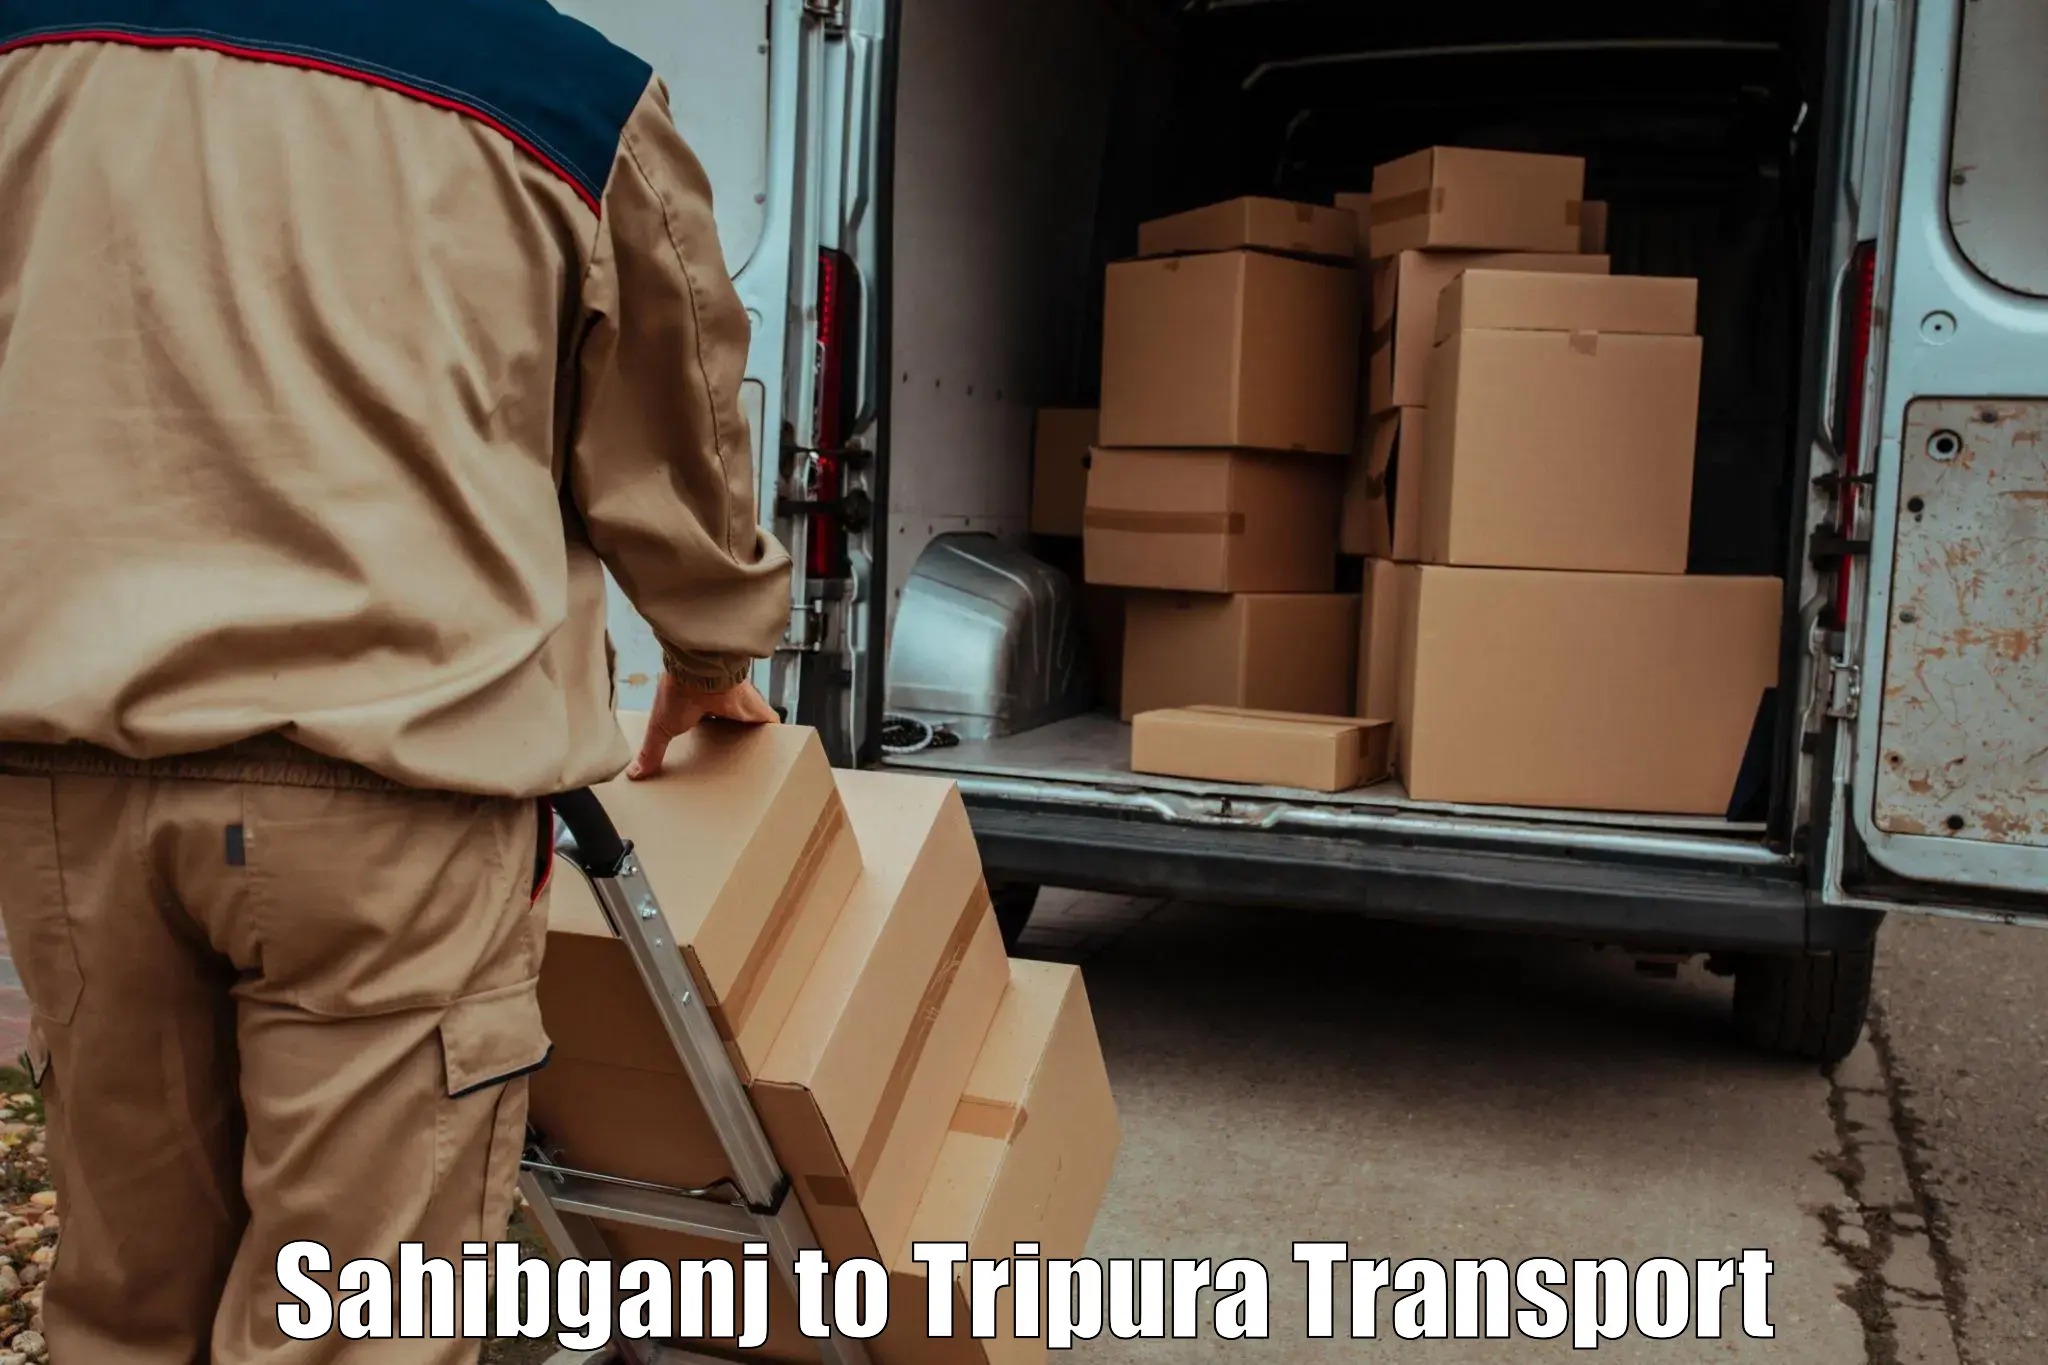 Daily transport service Sahibganj to Udaipur Tripura